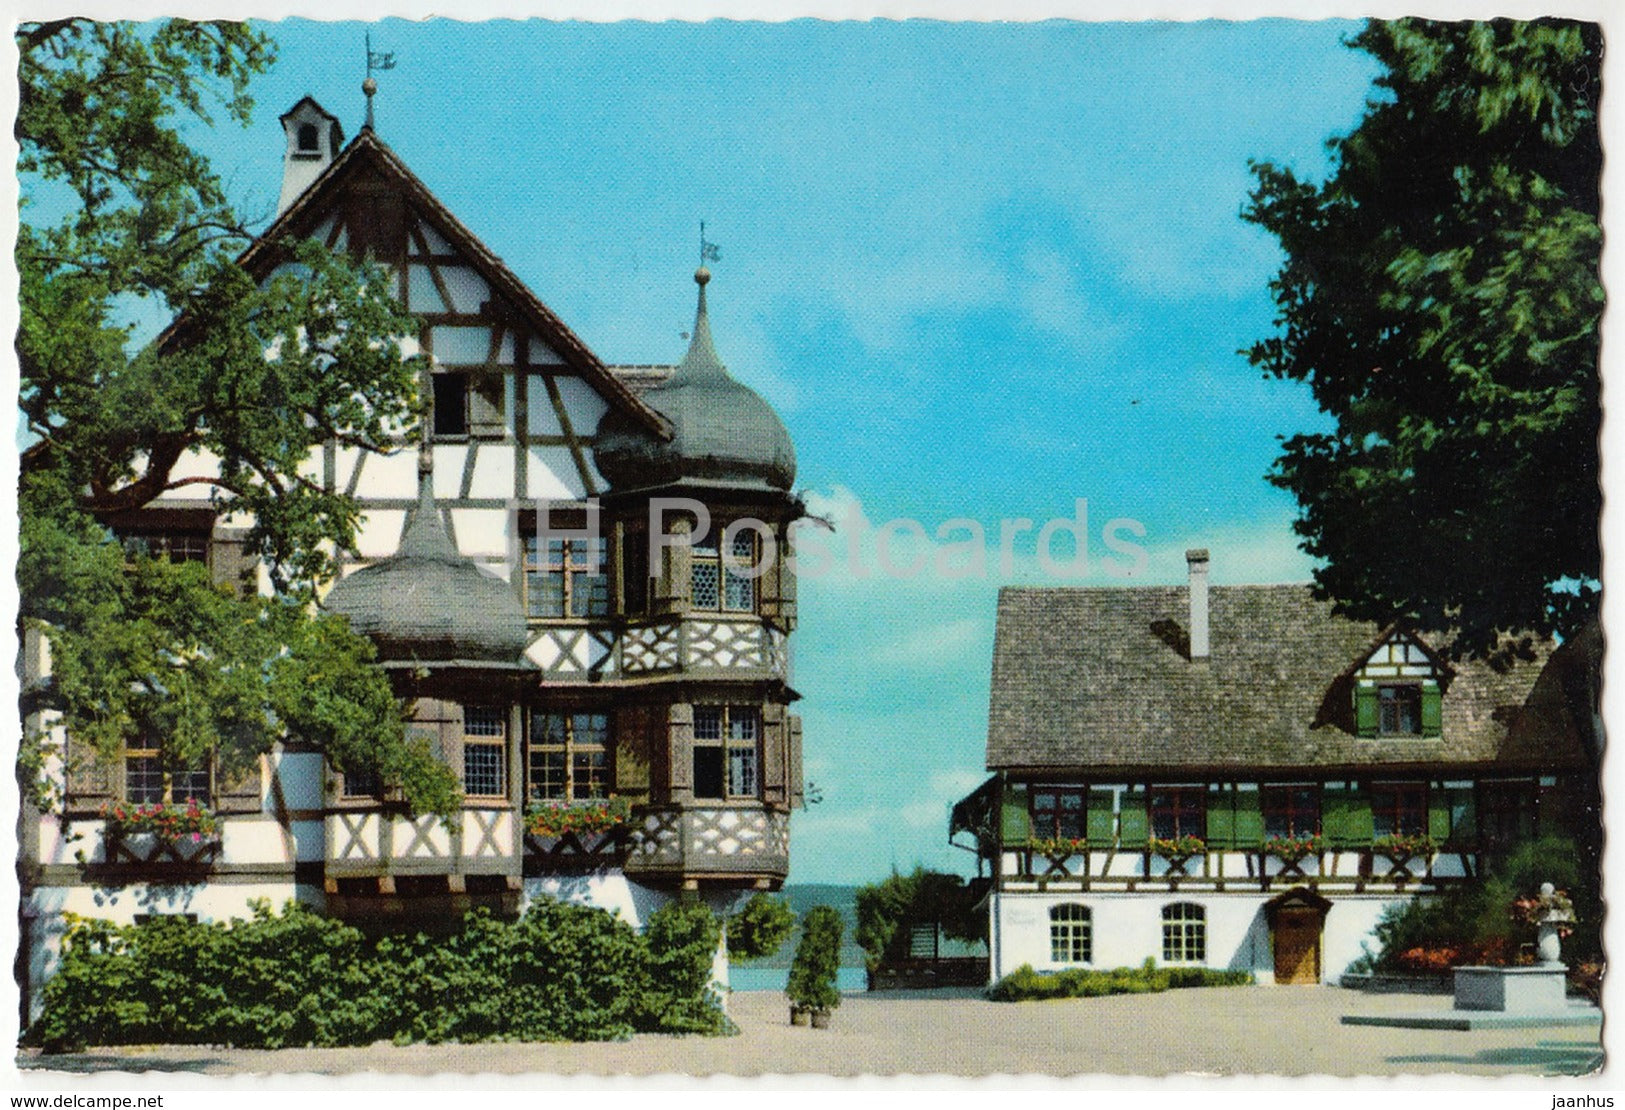 Gottlieben - Hotel Restaurant Drachenburg und Waaghaus - 558 - Switzerland - unused - JH Postcards